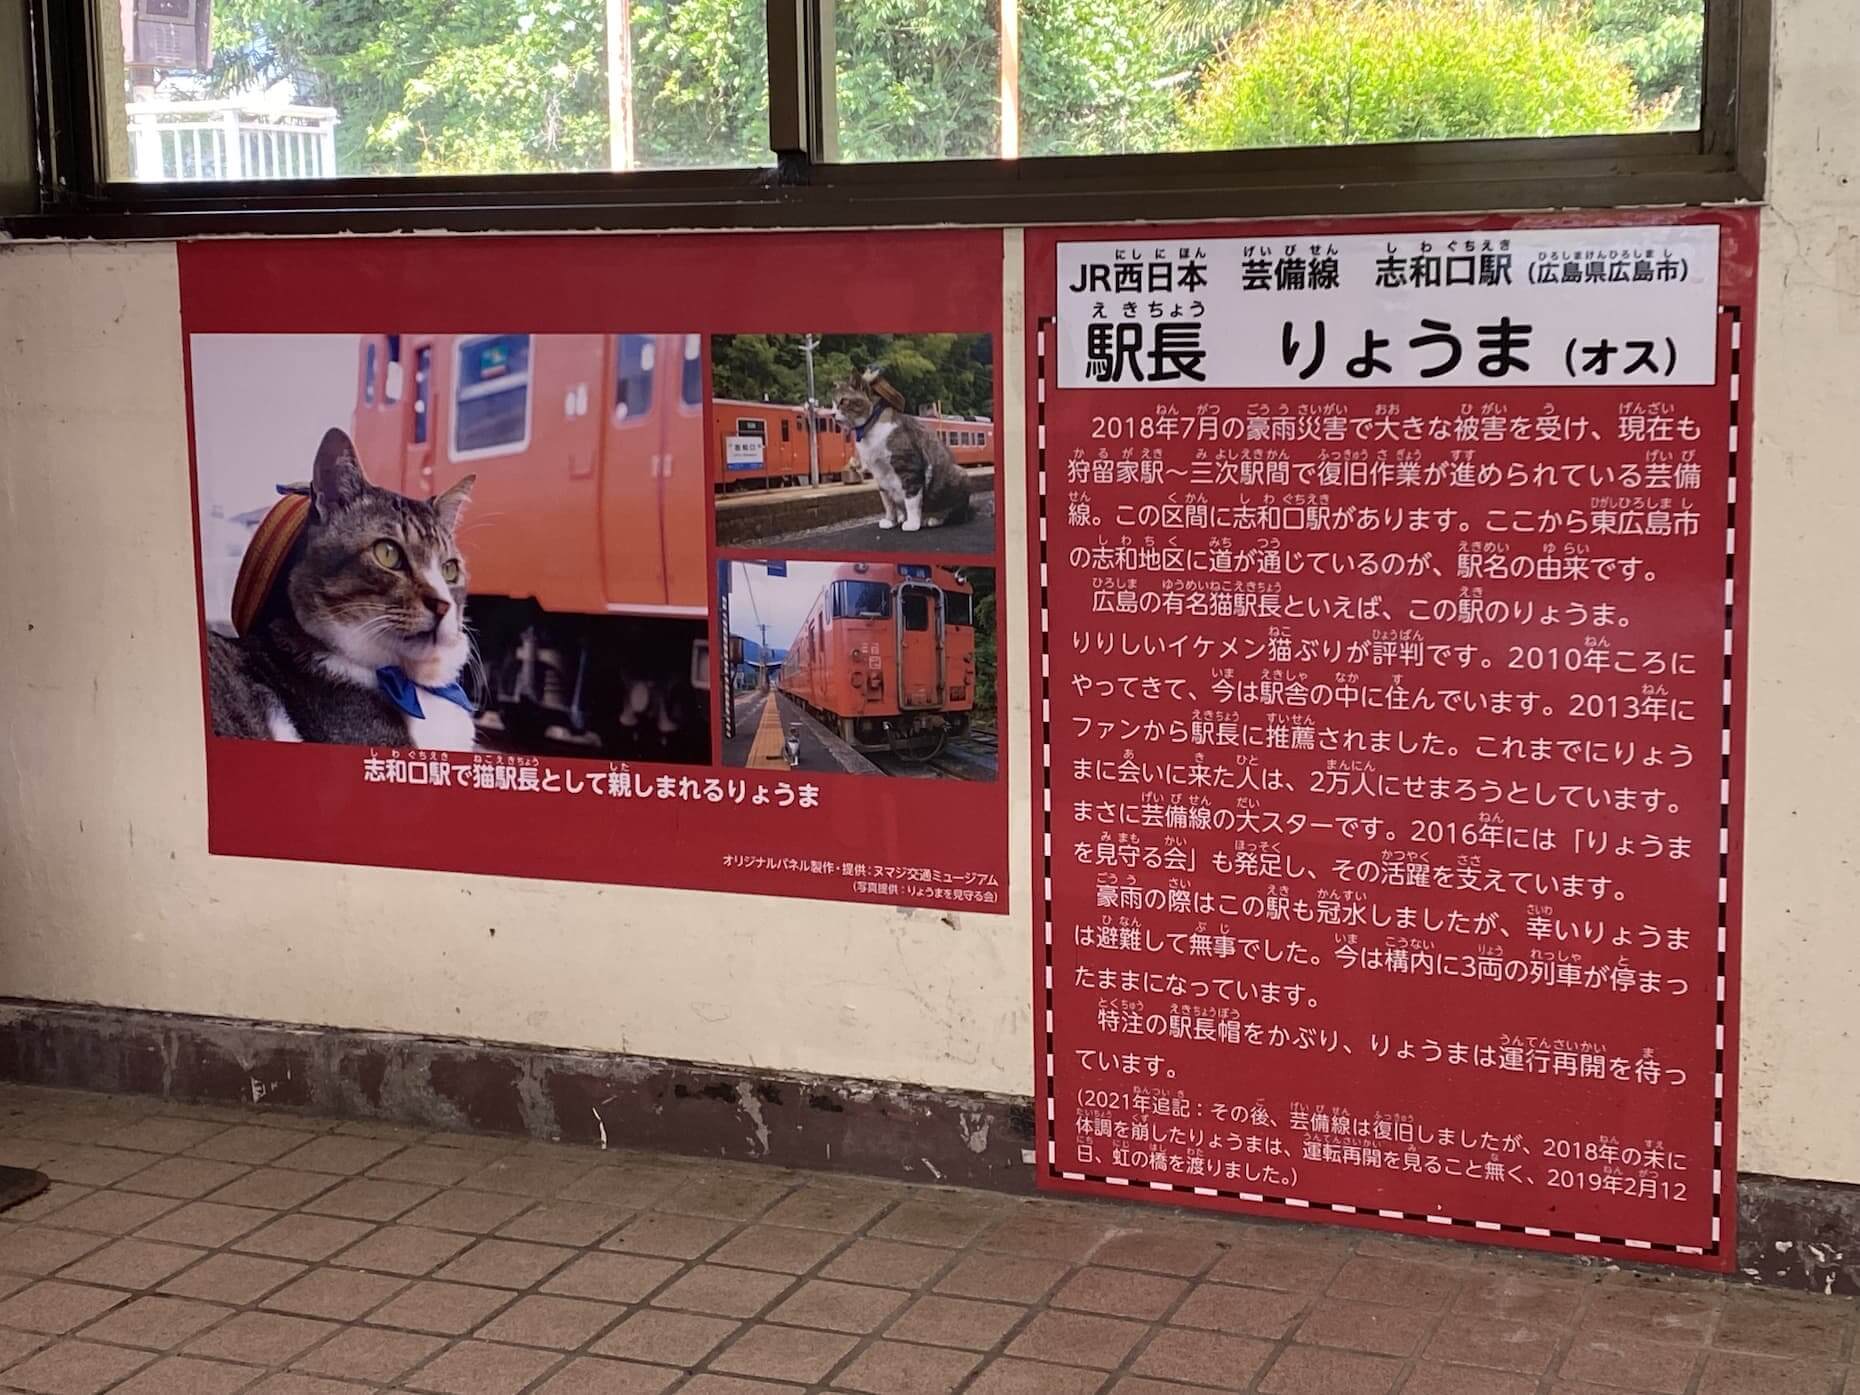 2019年に旅立った志和口駅の人気ネコ駅長「りょうま」のパネルが駅舎に掲げられていた